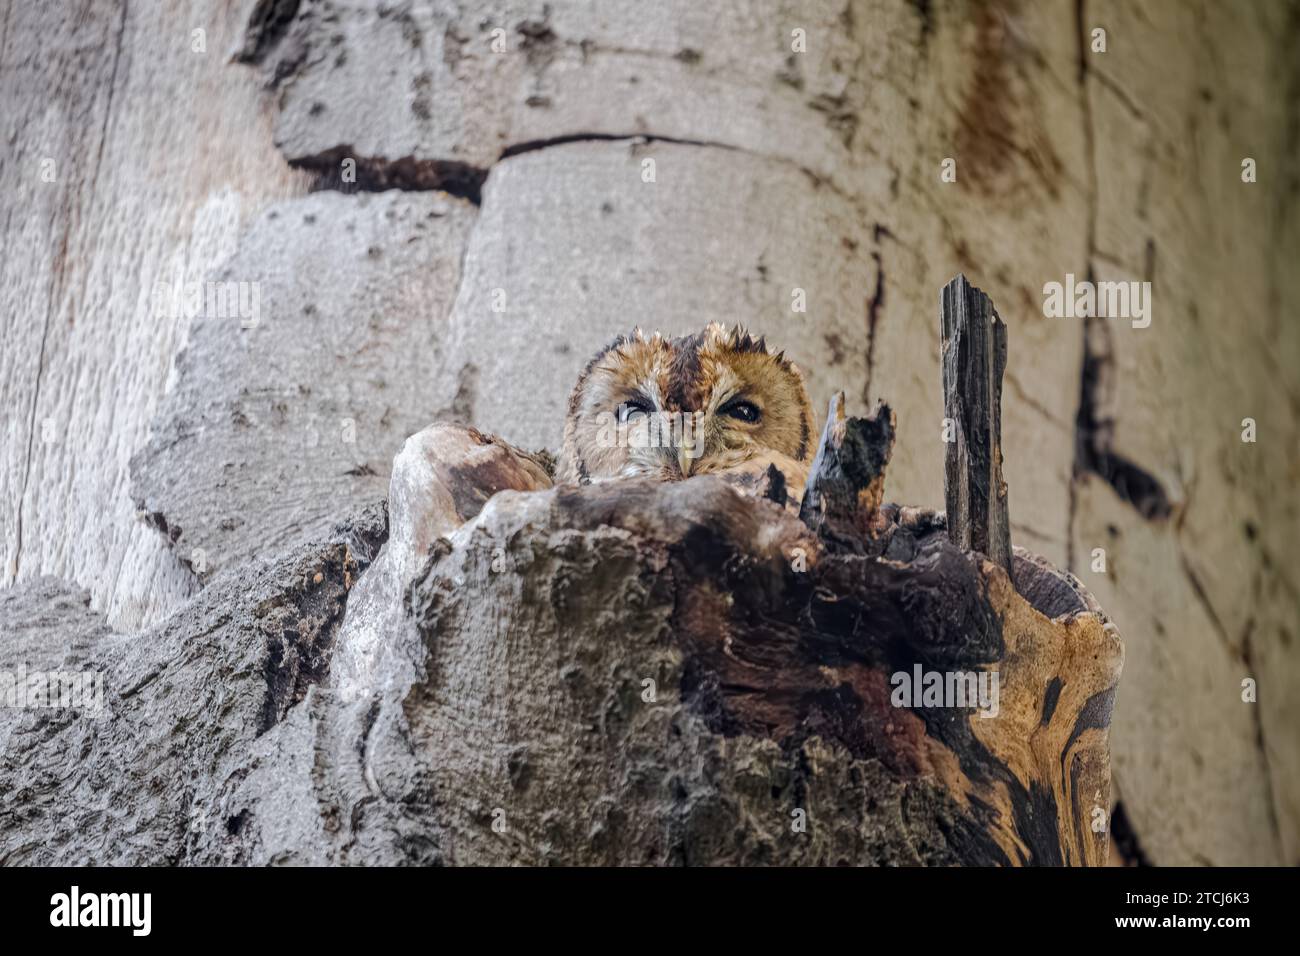 Die Eulen schauen aus ABERDEEN, SCHOTTLAND, TRICK OF THE EYE Images, aufgenommen am 6. November 2023, zeigen eine Eule, die in einem Baumstumpf schläft und sich so gut darin verschmilzt Stockfoto